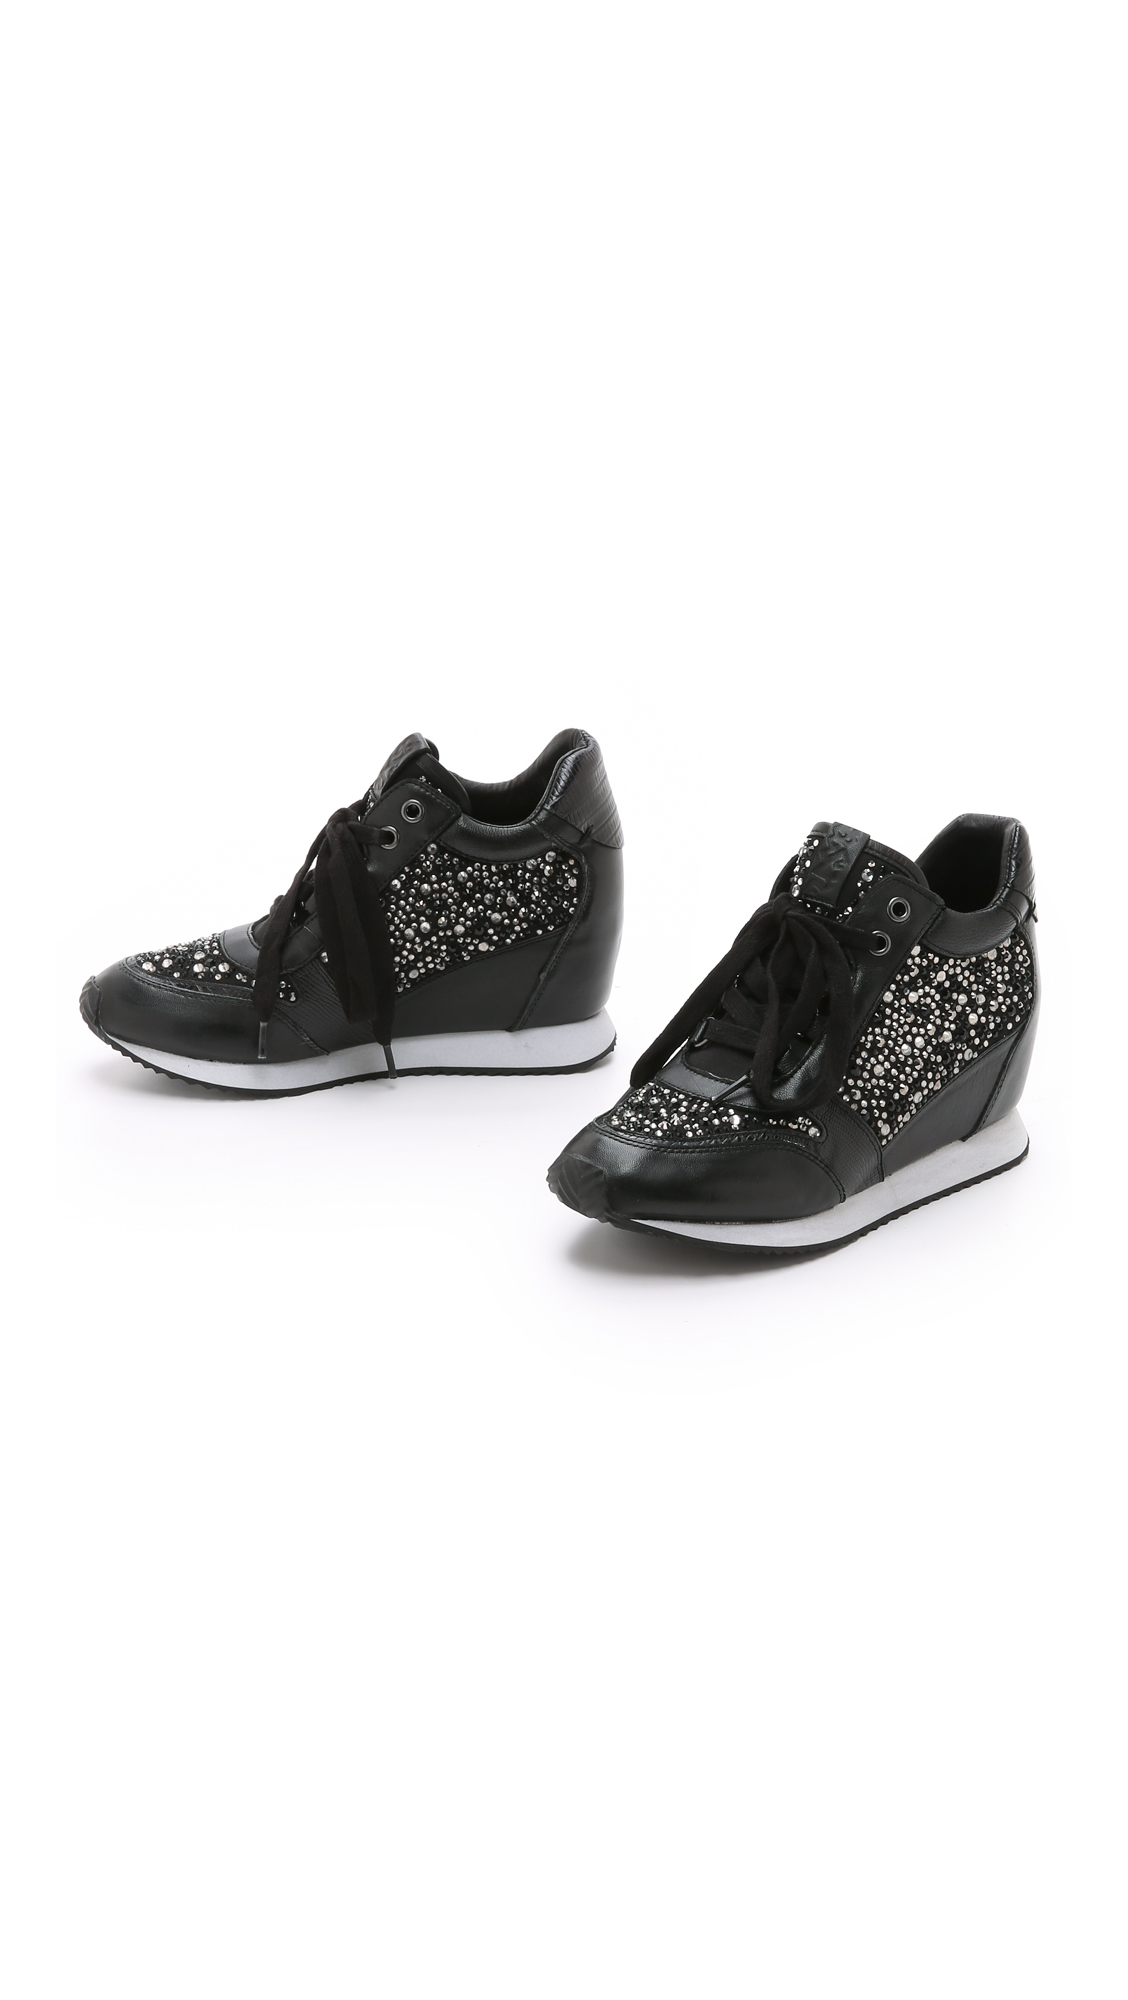 Ash Rhinestone Wedge Sneakers - Black | Lyst